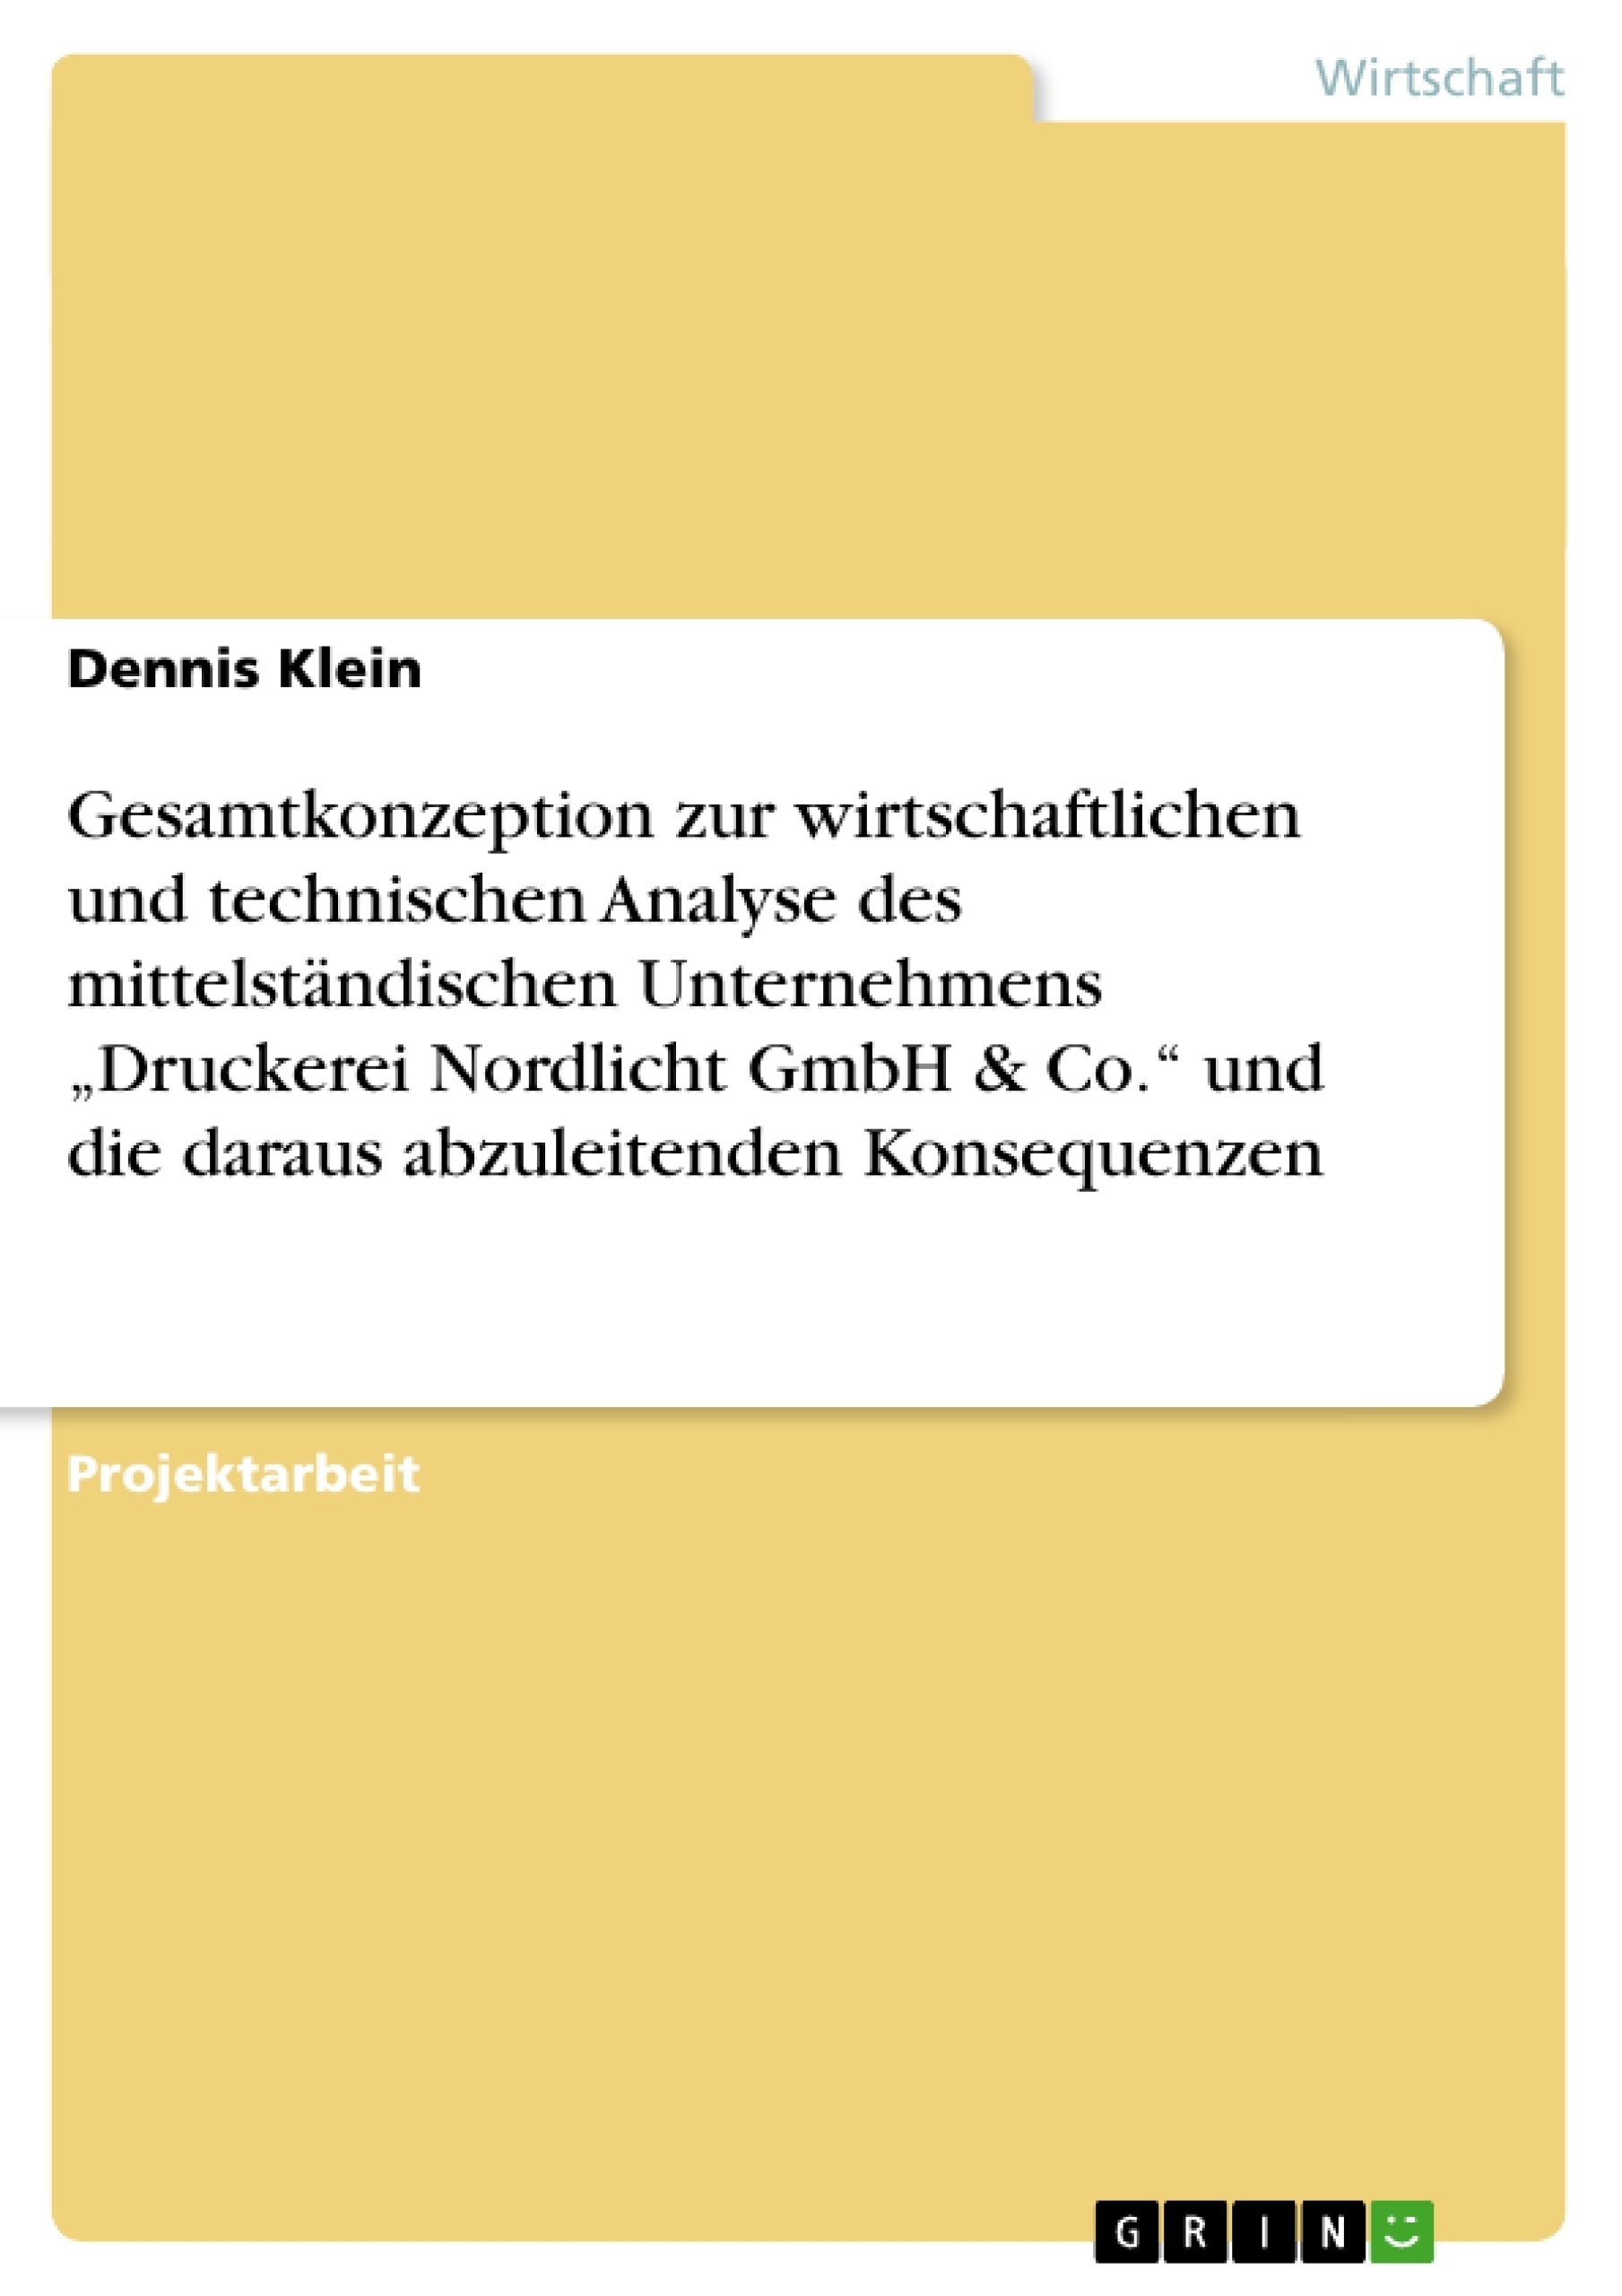 Titre: Gesamtkonzeption zur wirtschaftlichen und technischen Analyse des mittelständischen Unternehmens „Druckerei Nordlicht GmbH & Co.“ und die daraus abzuleitenden Konsequenzen